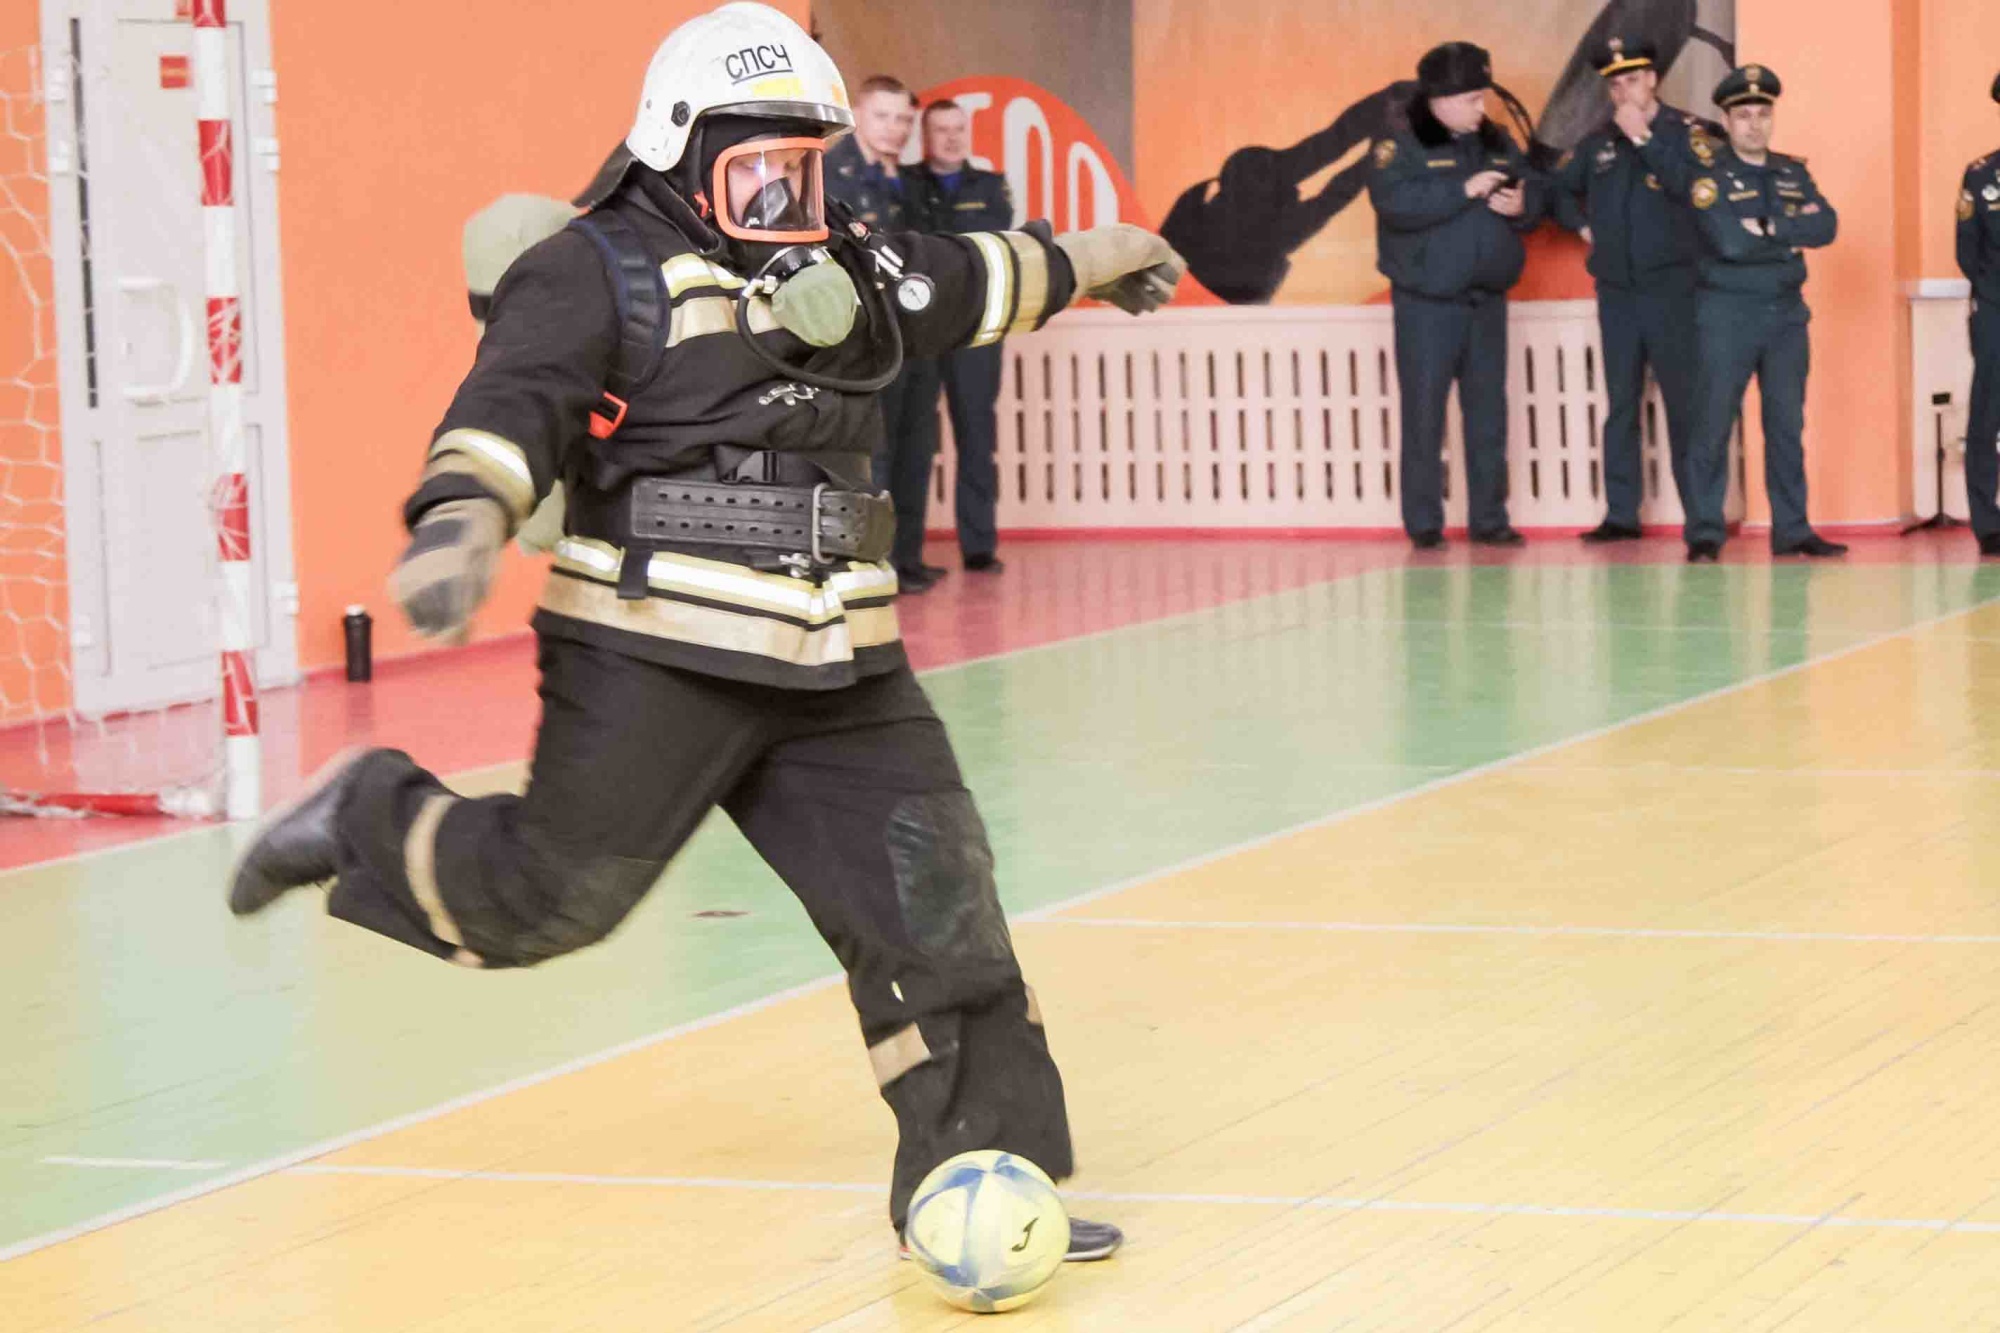 Омские пожарные сыграли в футбол в полном обмундировании #Омск #Общество #Сегодня